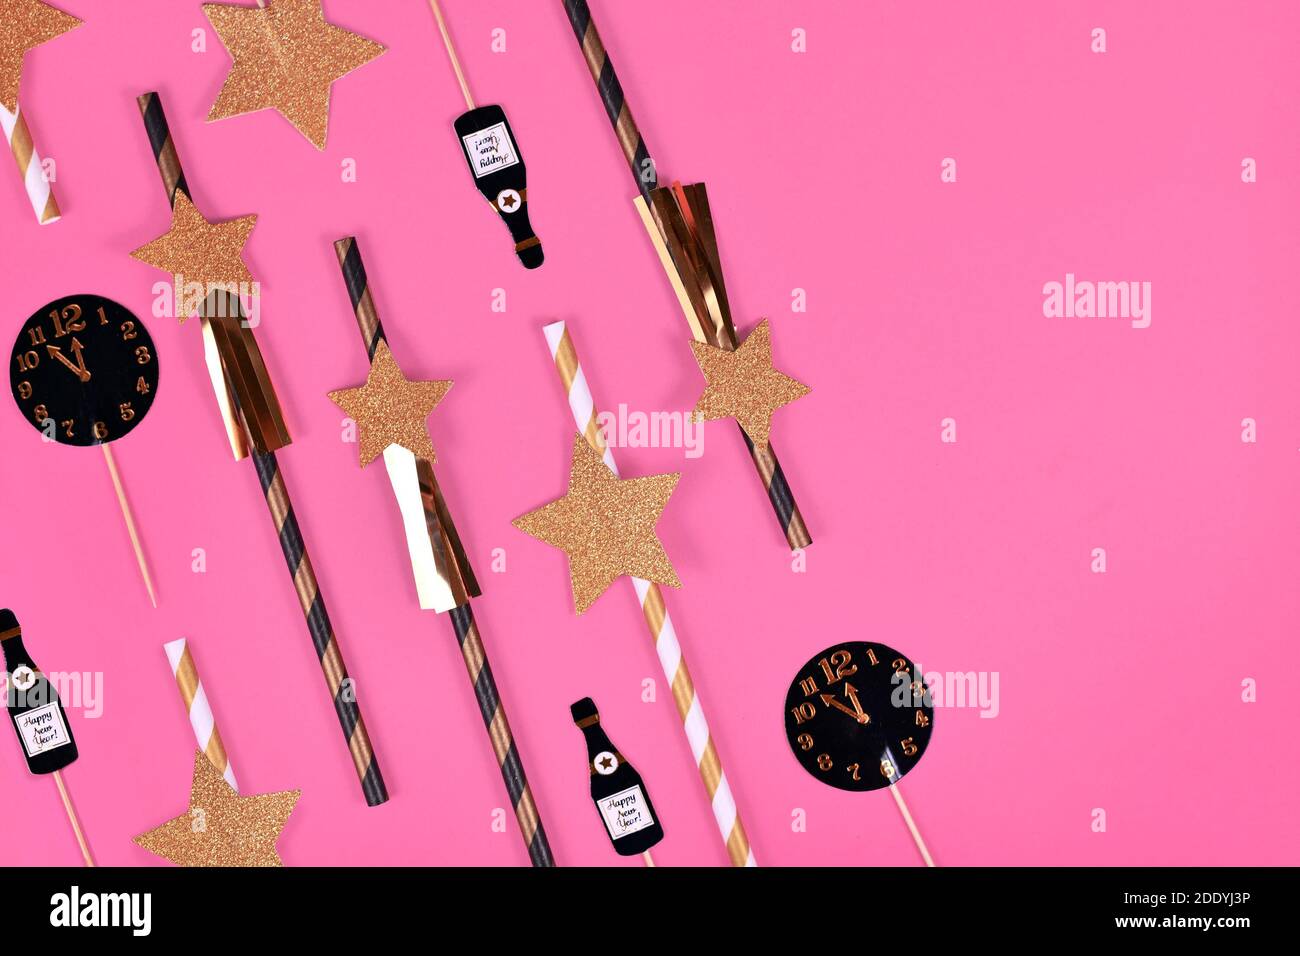 Nouvel an Silvester célébration plat avec étoiles en papier à rayures dorées, noires et blanches et flûte champaign et décoration en papier horloge sur fond rose Banque D'Images